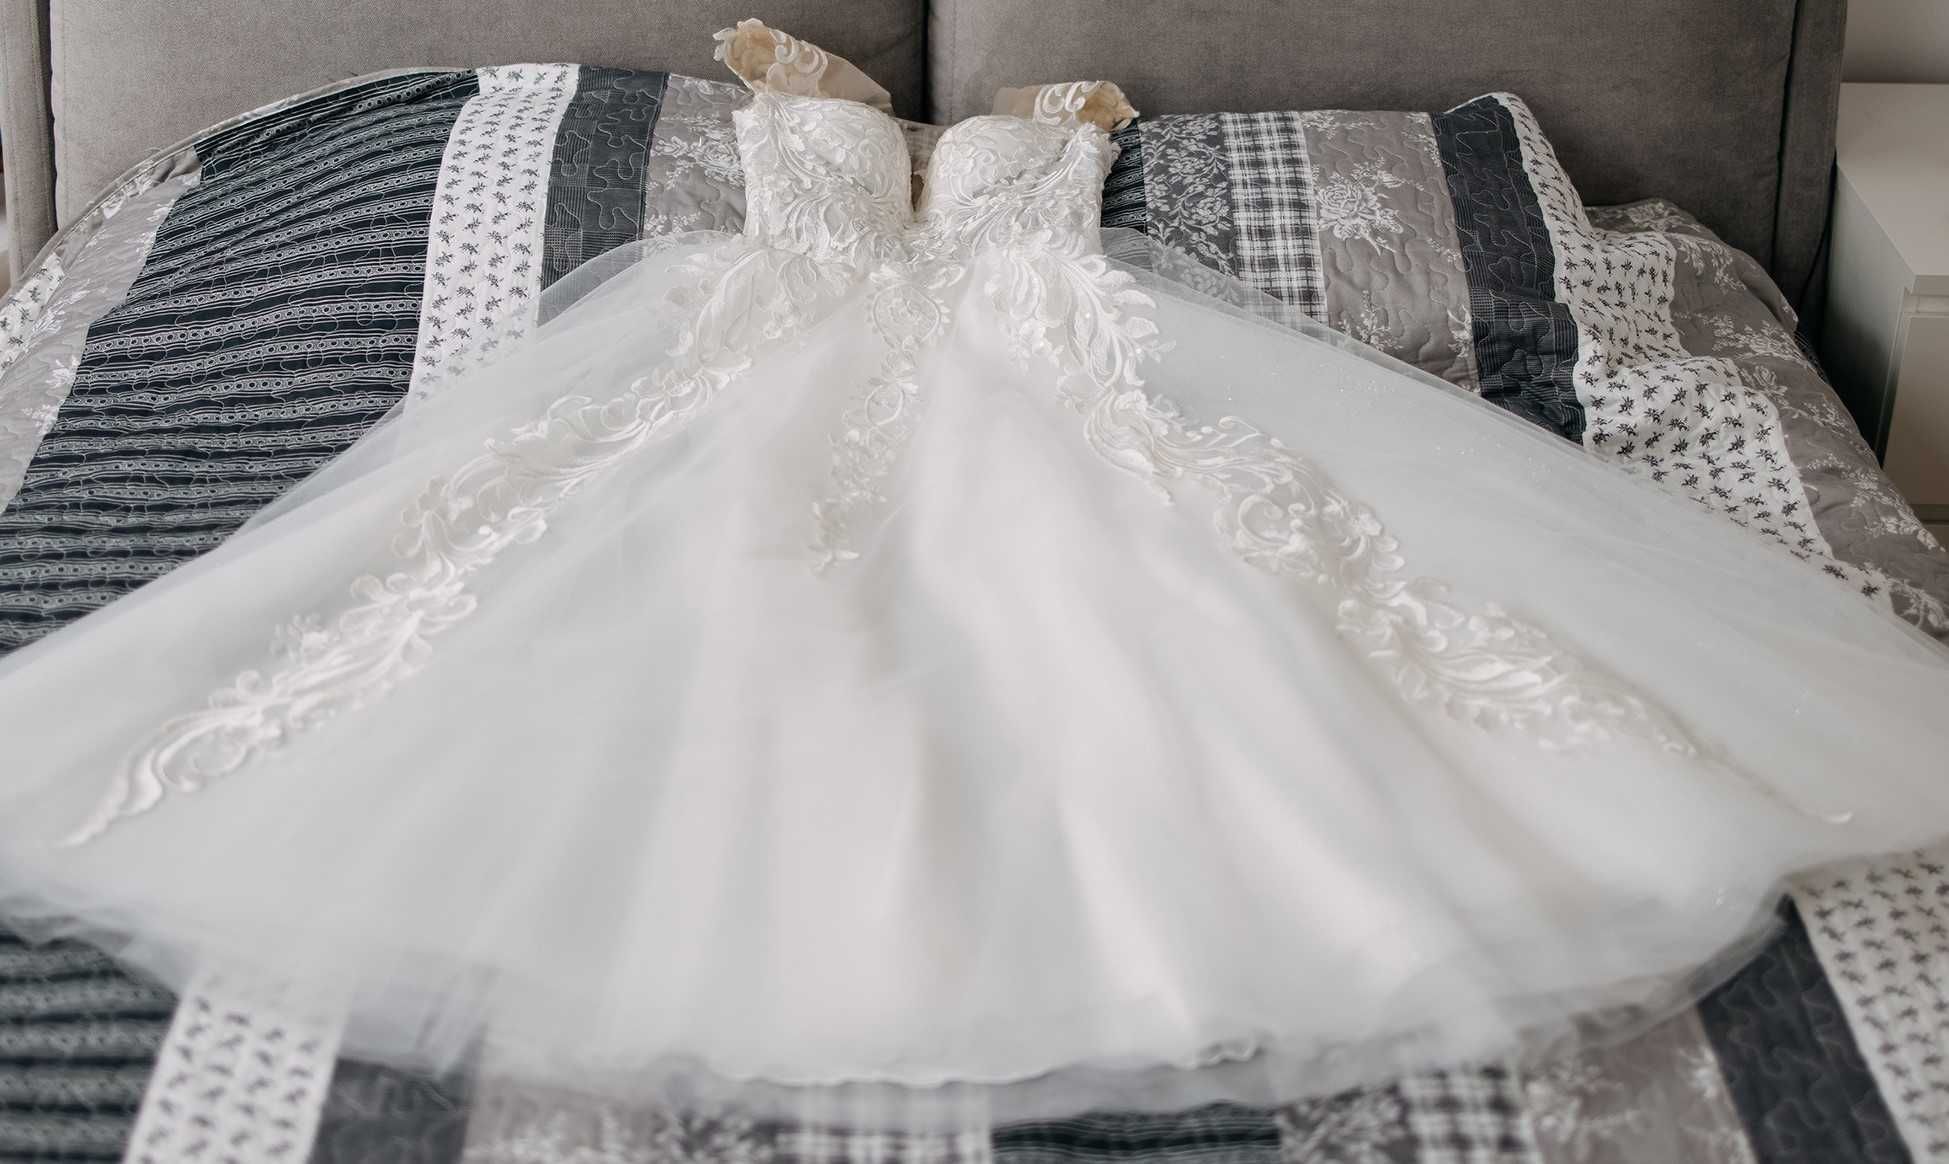 suknia ślubna śmietankowa typu księżniczka 150 cm+ 7 cm obcas